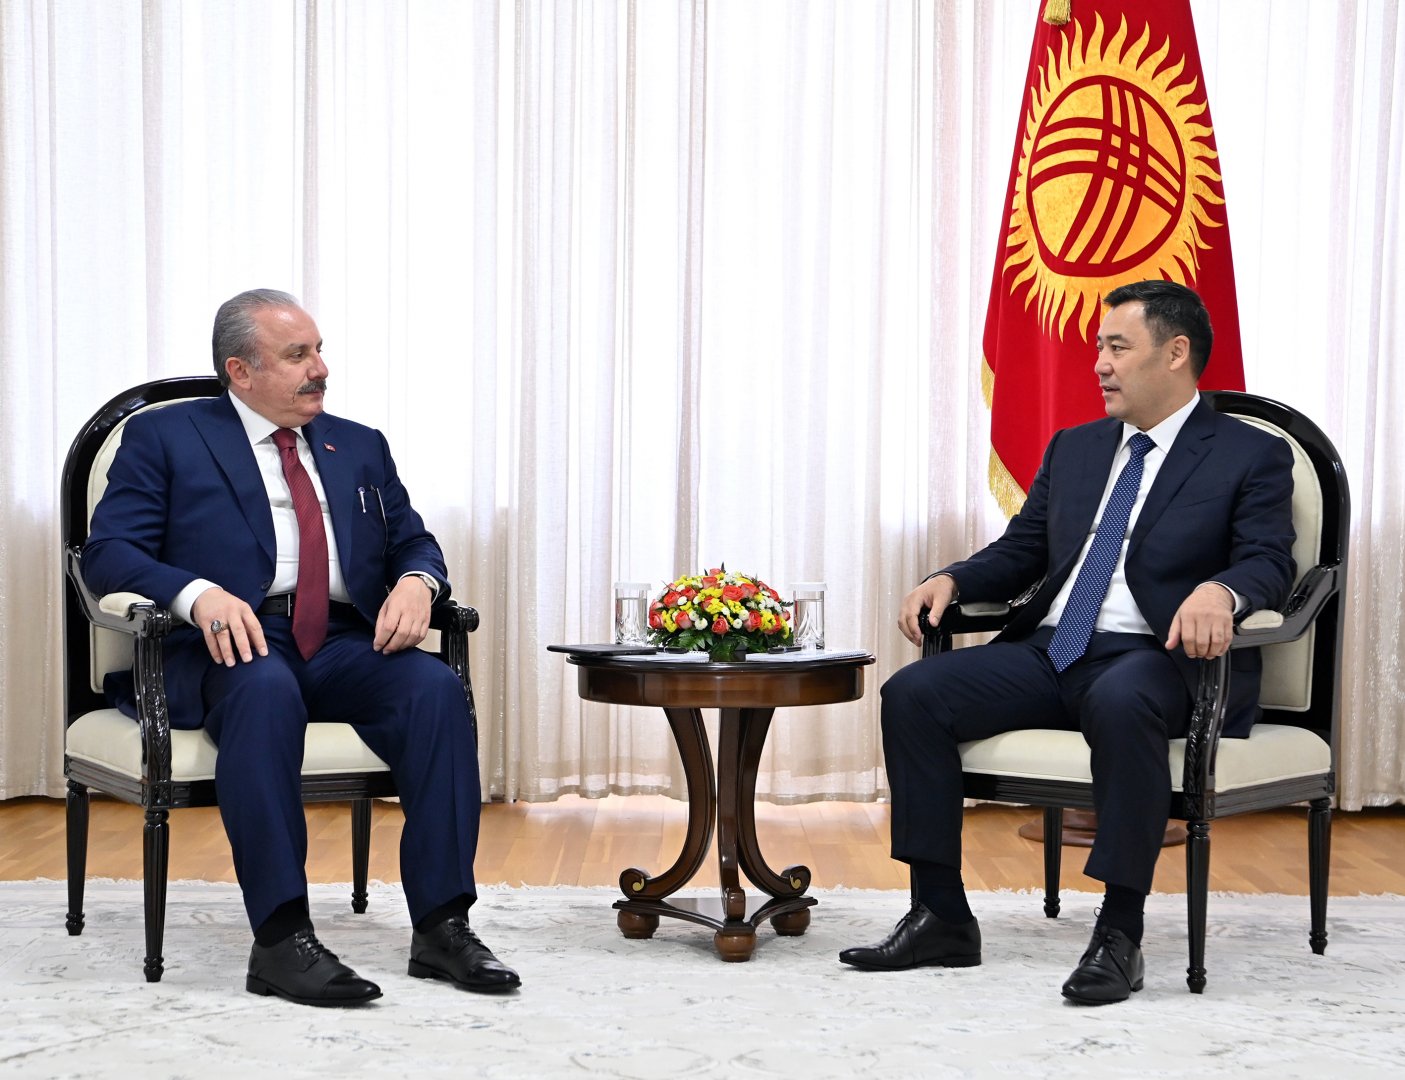 Садыр Жапаров: Кыргызстан всегда готов развивать двусторонние отношения с Турцией